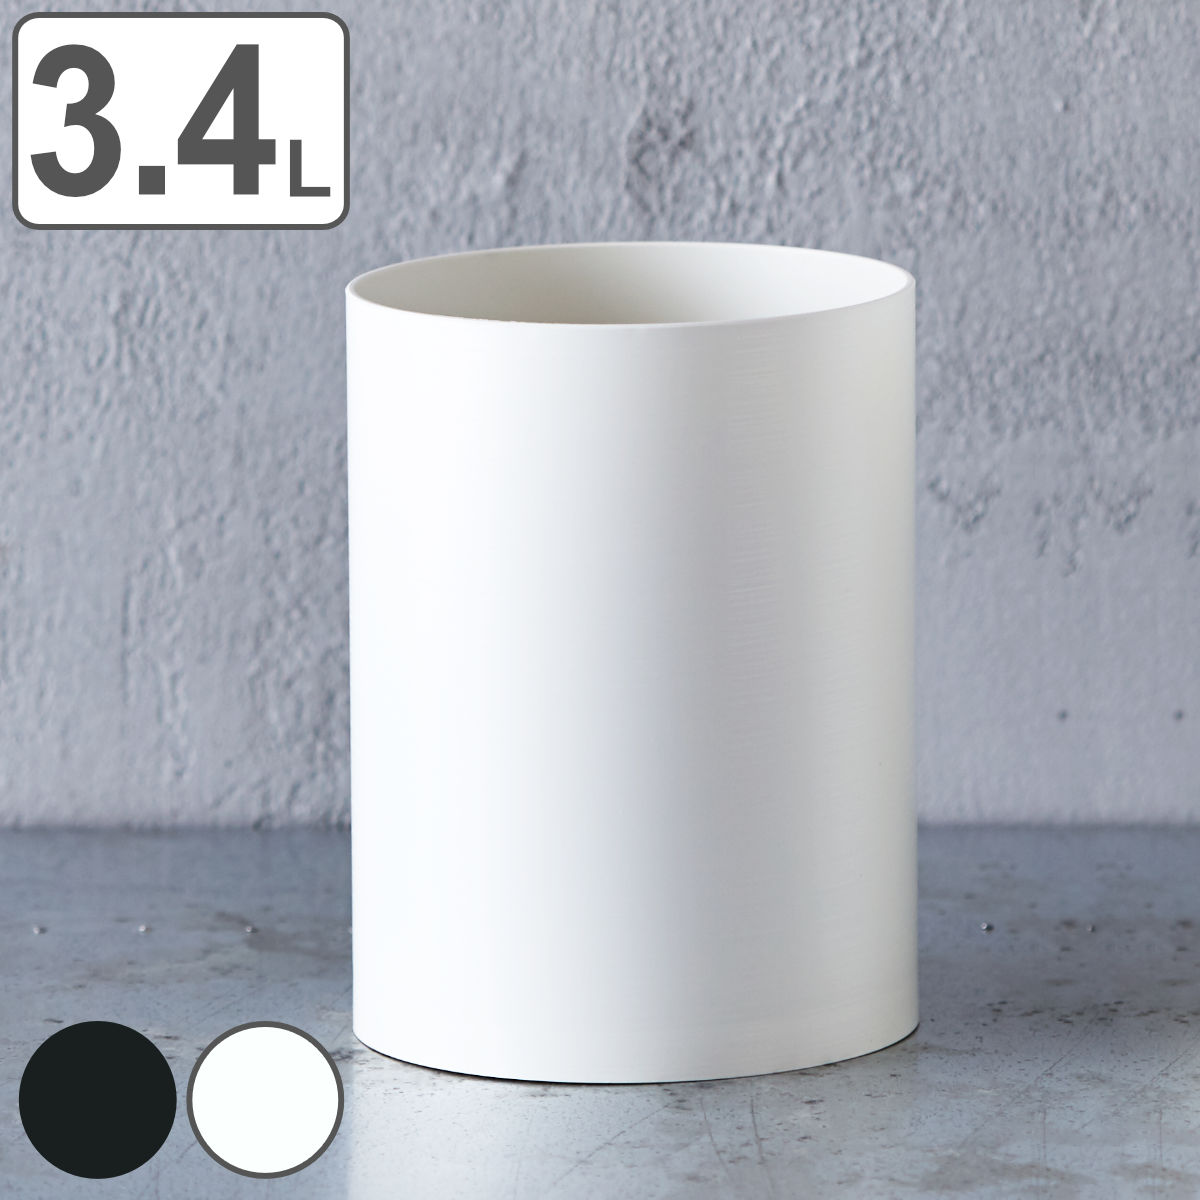 ゴミ箱 3.4L ダストボックスS ダスパースタイルblack&white